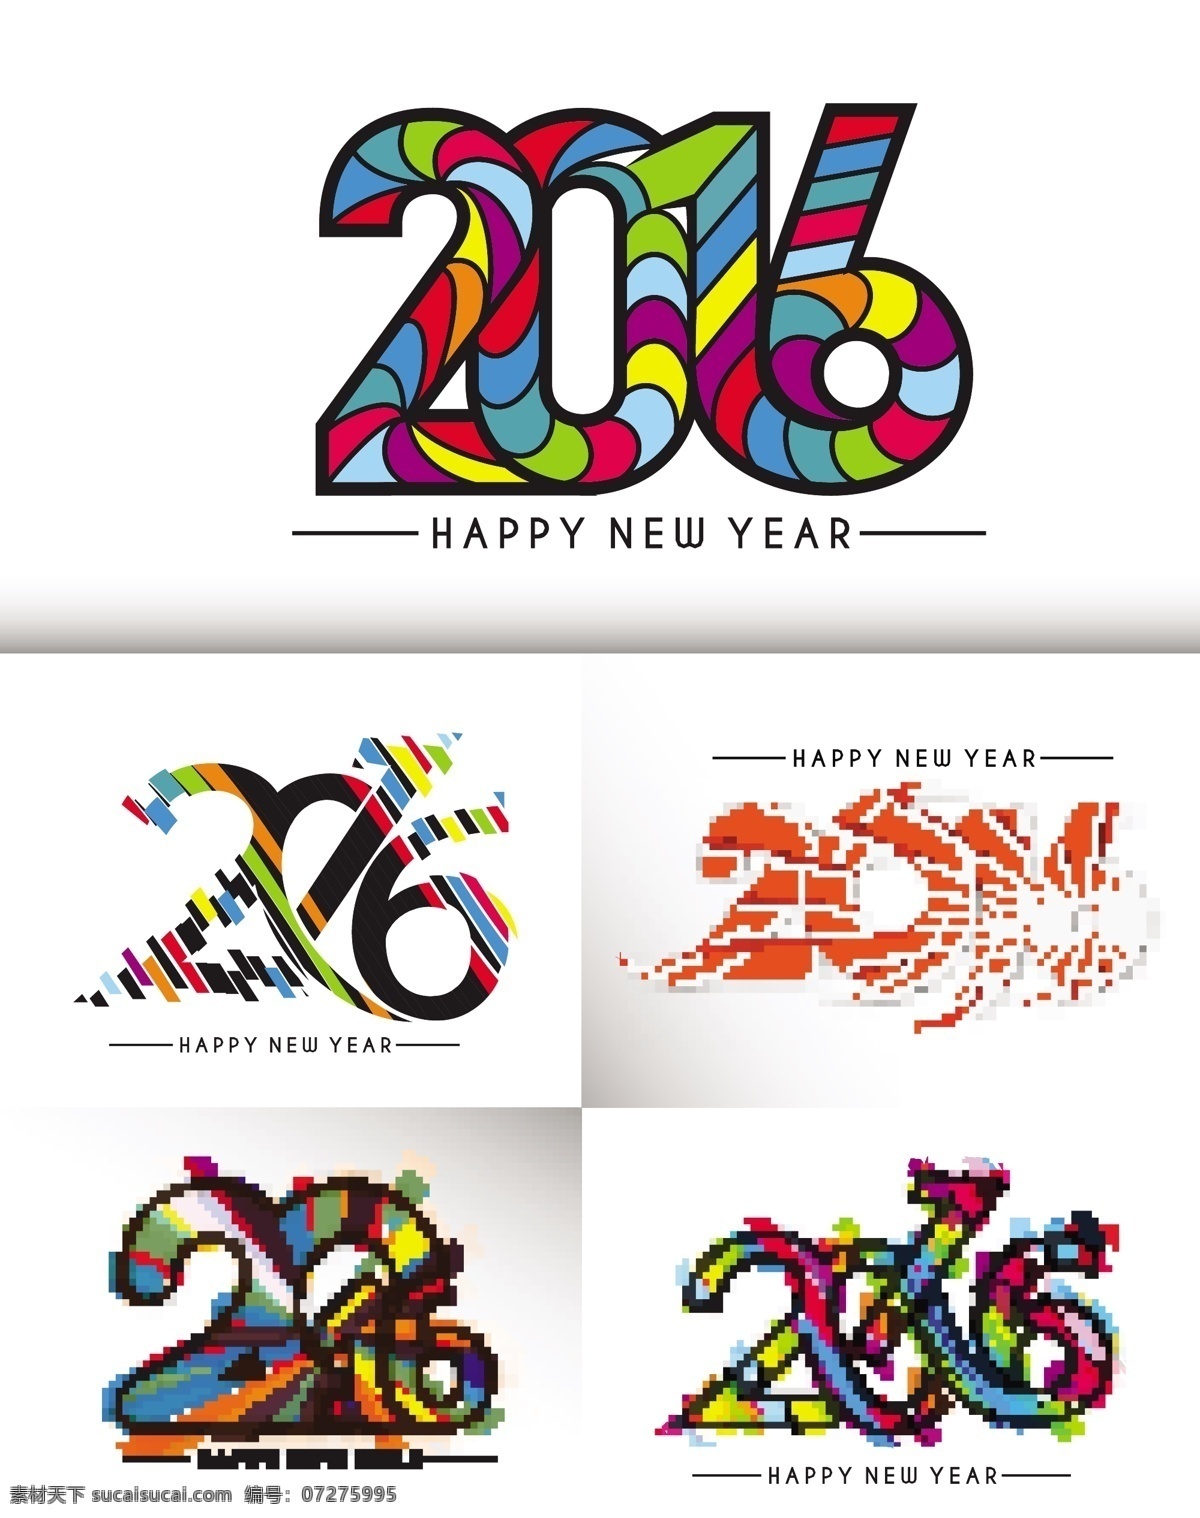 2016 年 新年 猴年 中国年 中国元素 新年海报 happy new year 猴年设计 创意数字 元旦 春节 节日素材 节日庆祝 矢量 文化艺术